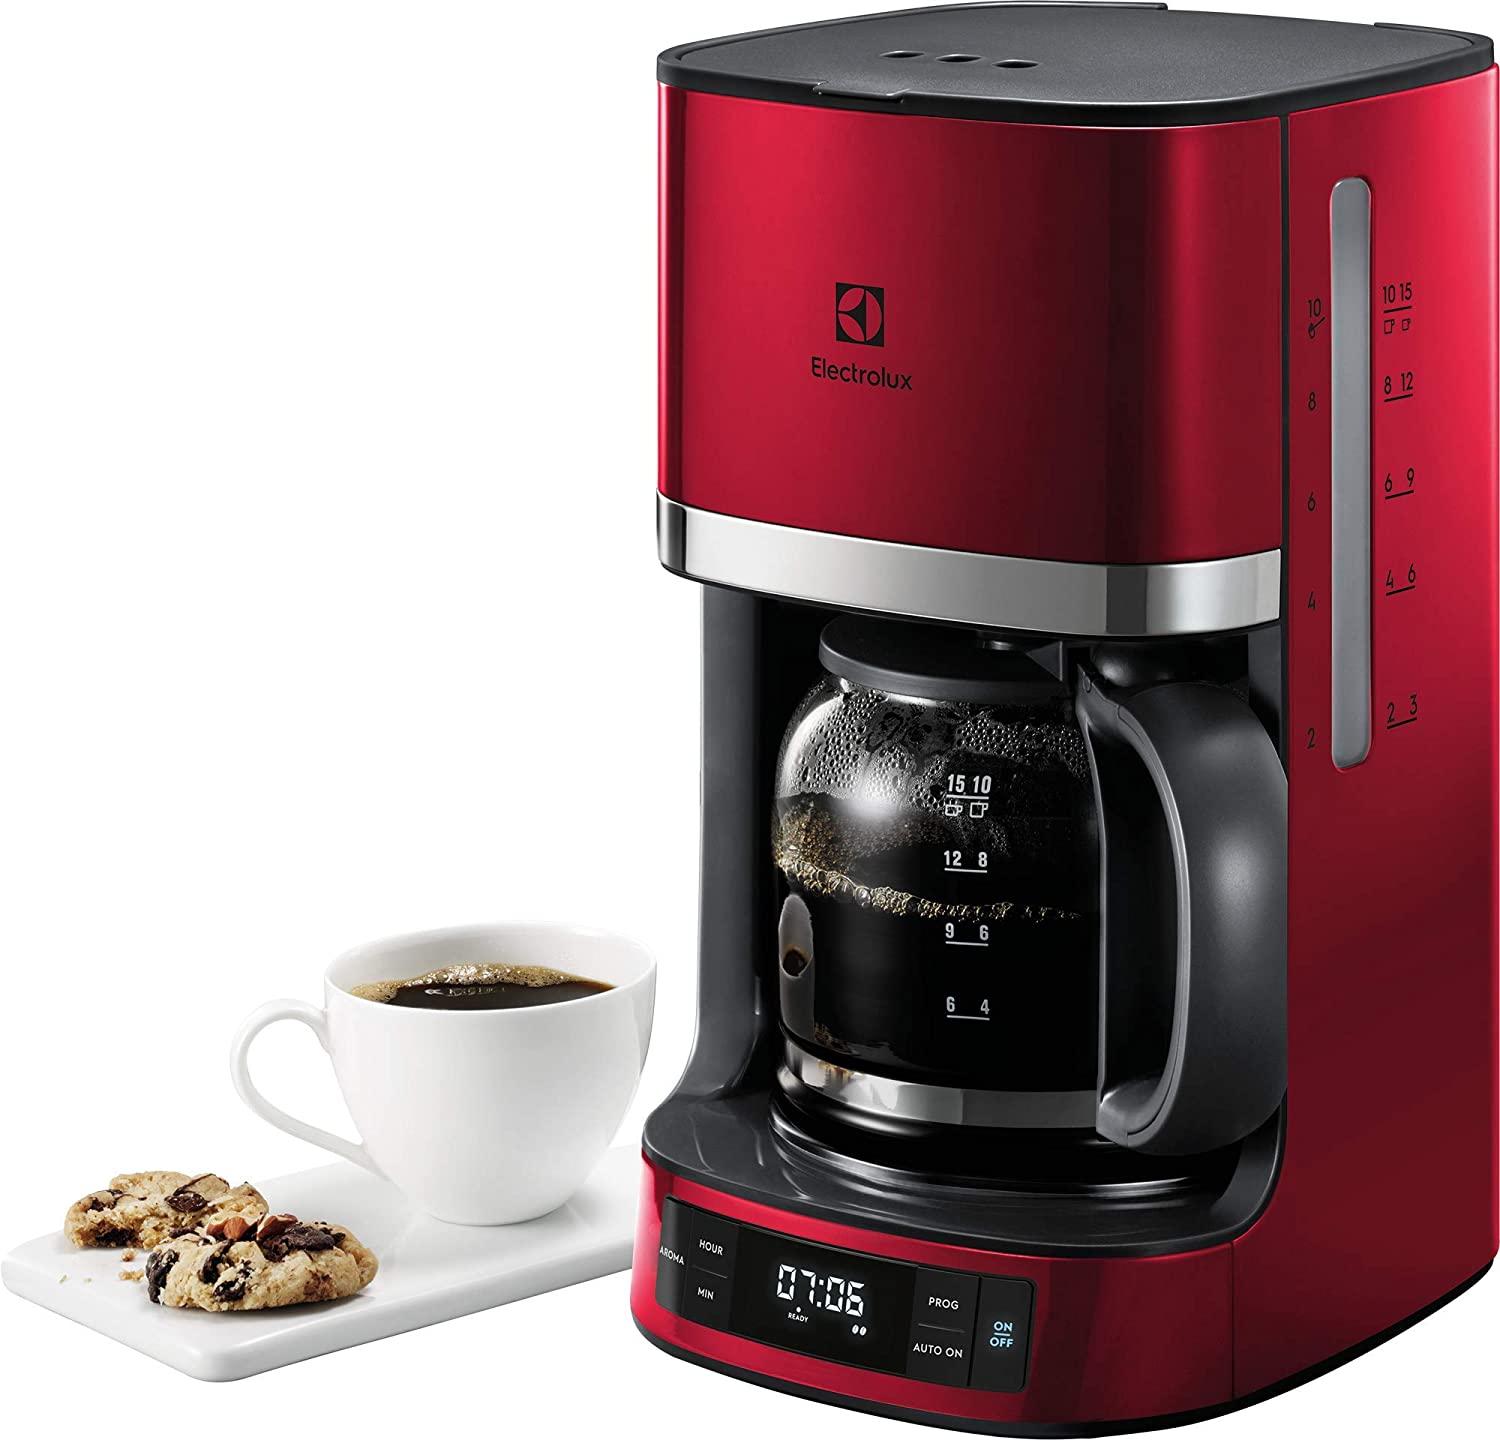 
                                    
                                Macchine per il caffè americano: le migliori in sconto per le offerte esclusive Amazon Prime